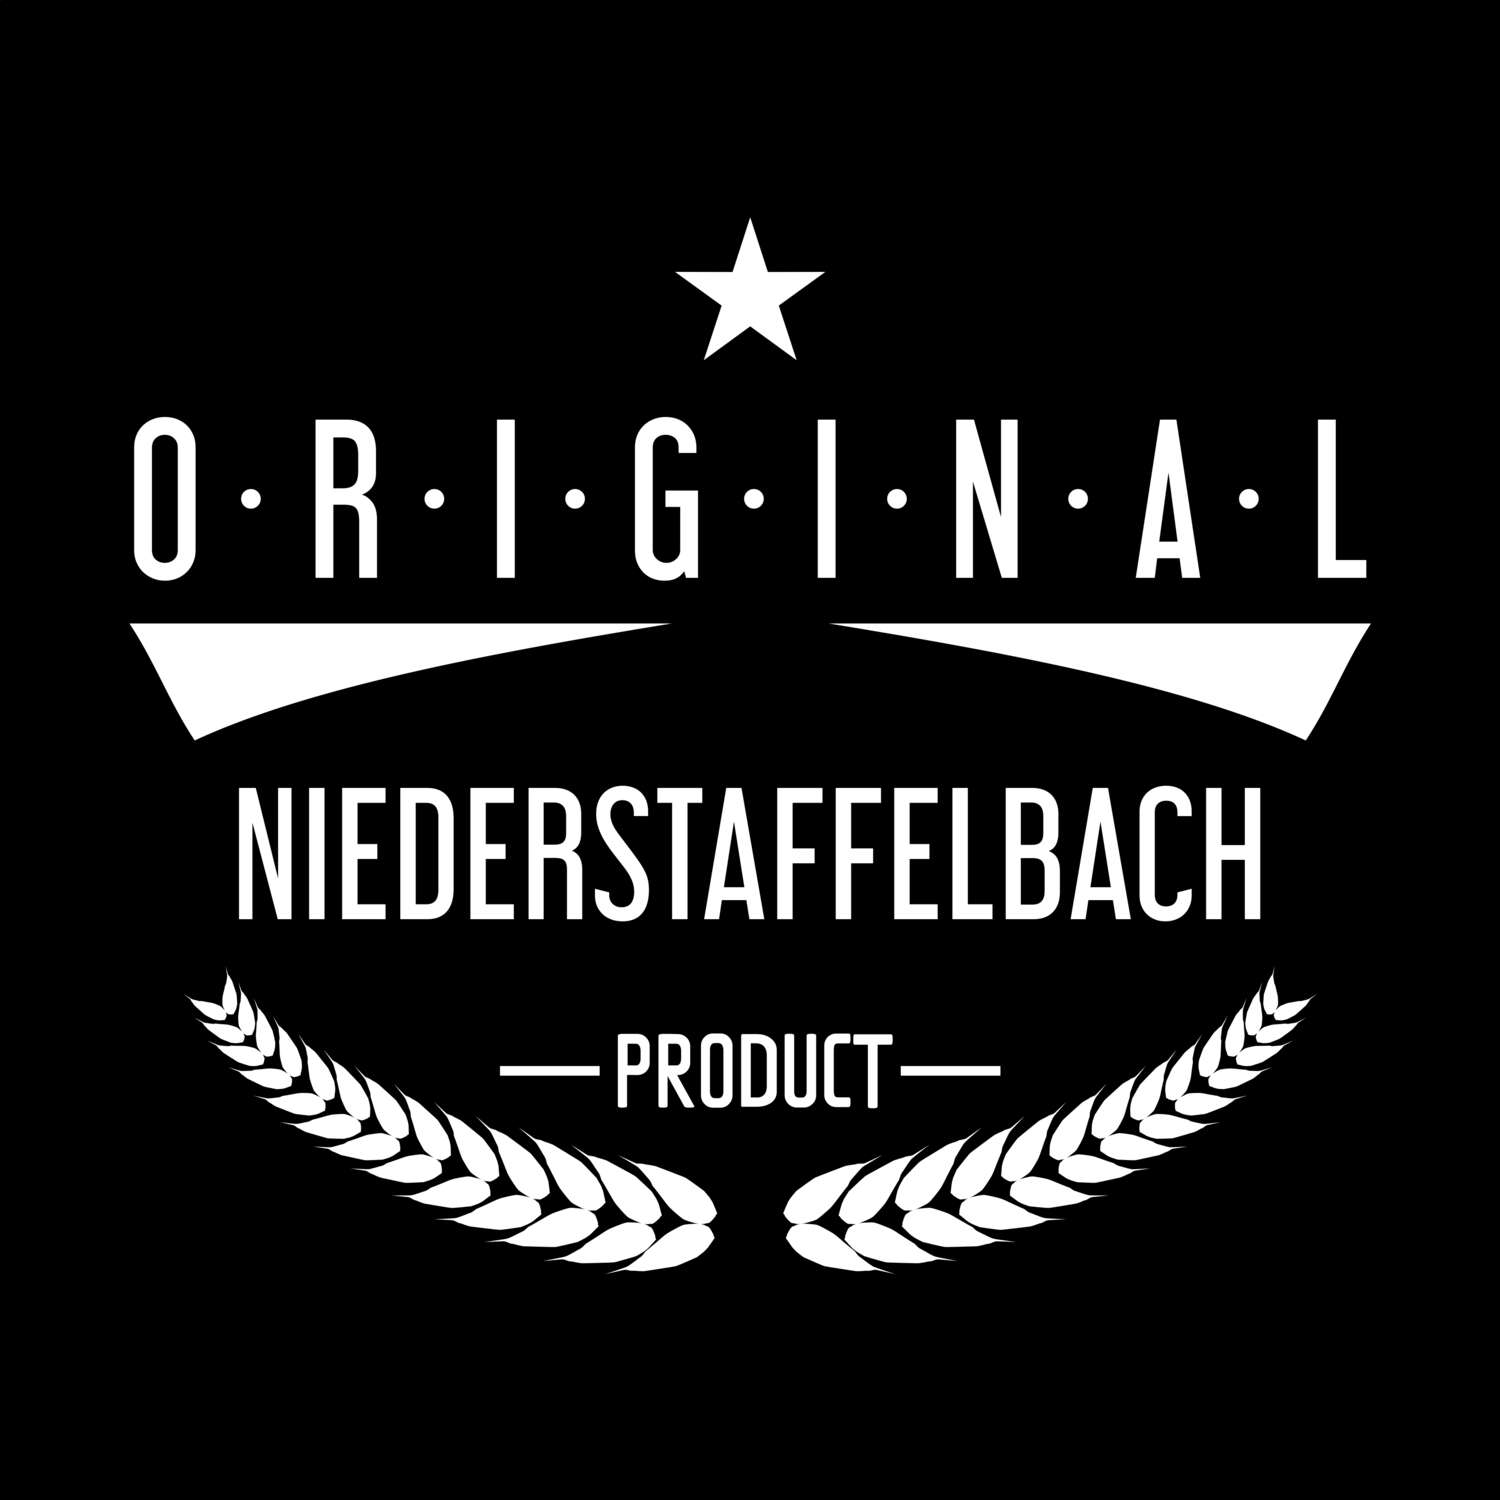 Niederstaffelbach T-Shirt »Original Product«